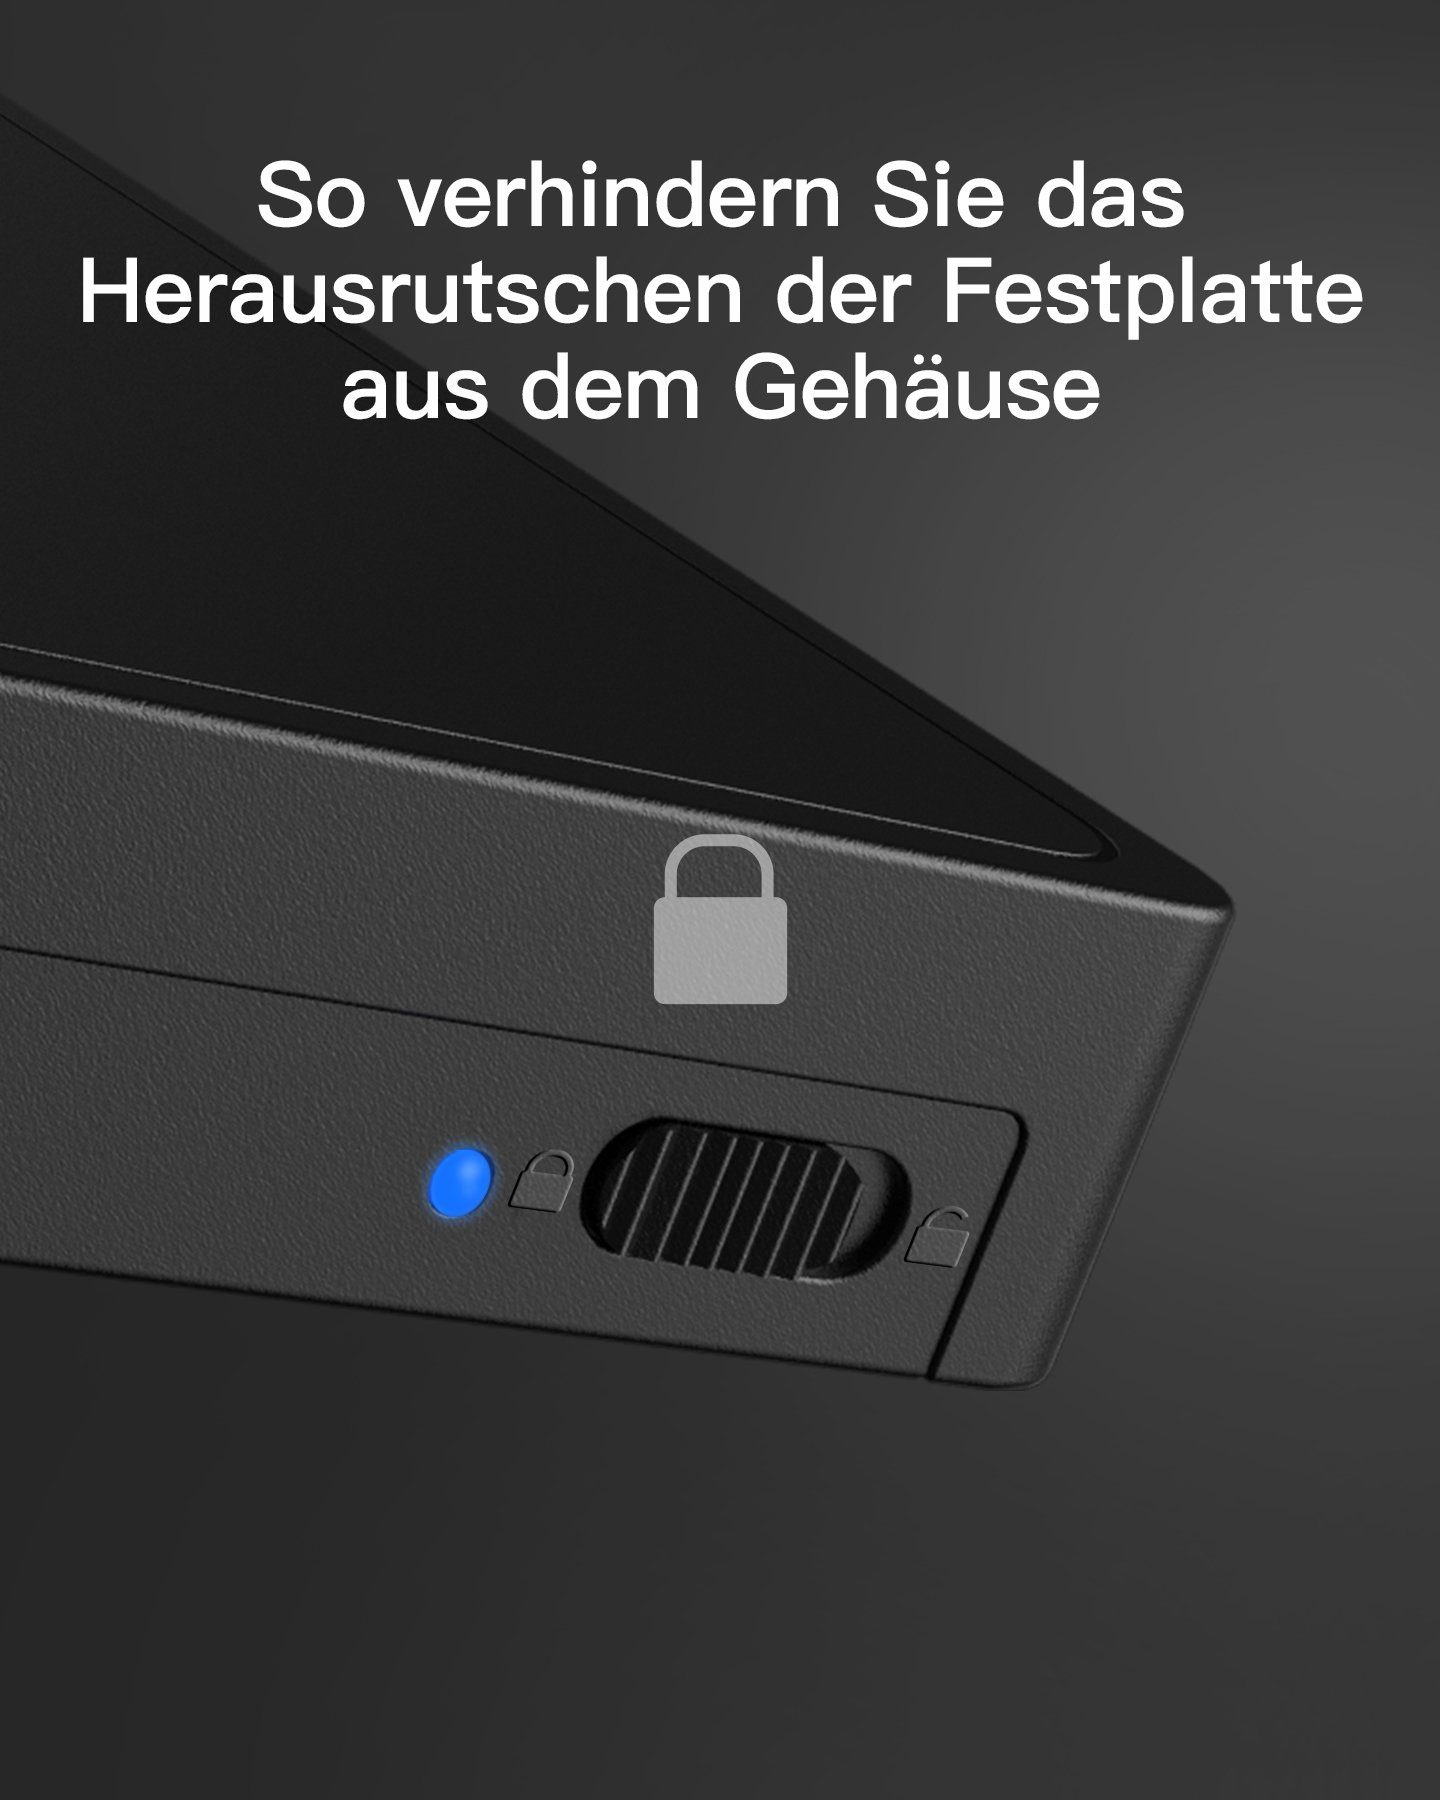 SSD HDD für 2.5 Inateck Zoll SATA Festplatten-Gehäuse Festplattengehäuse